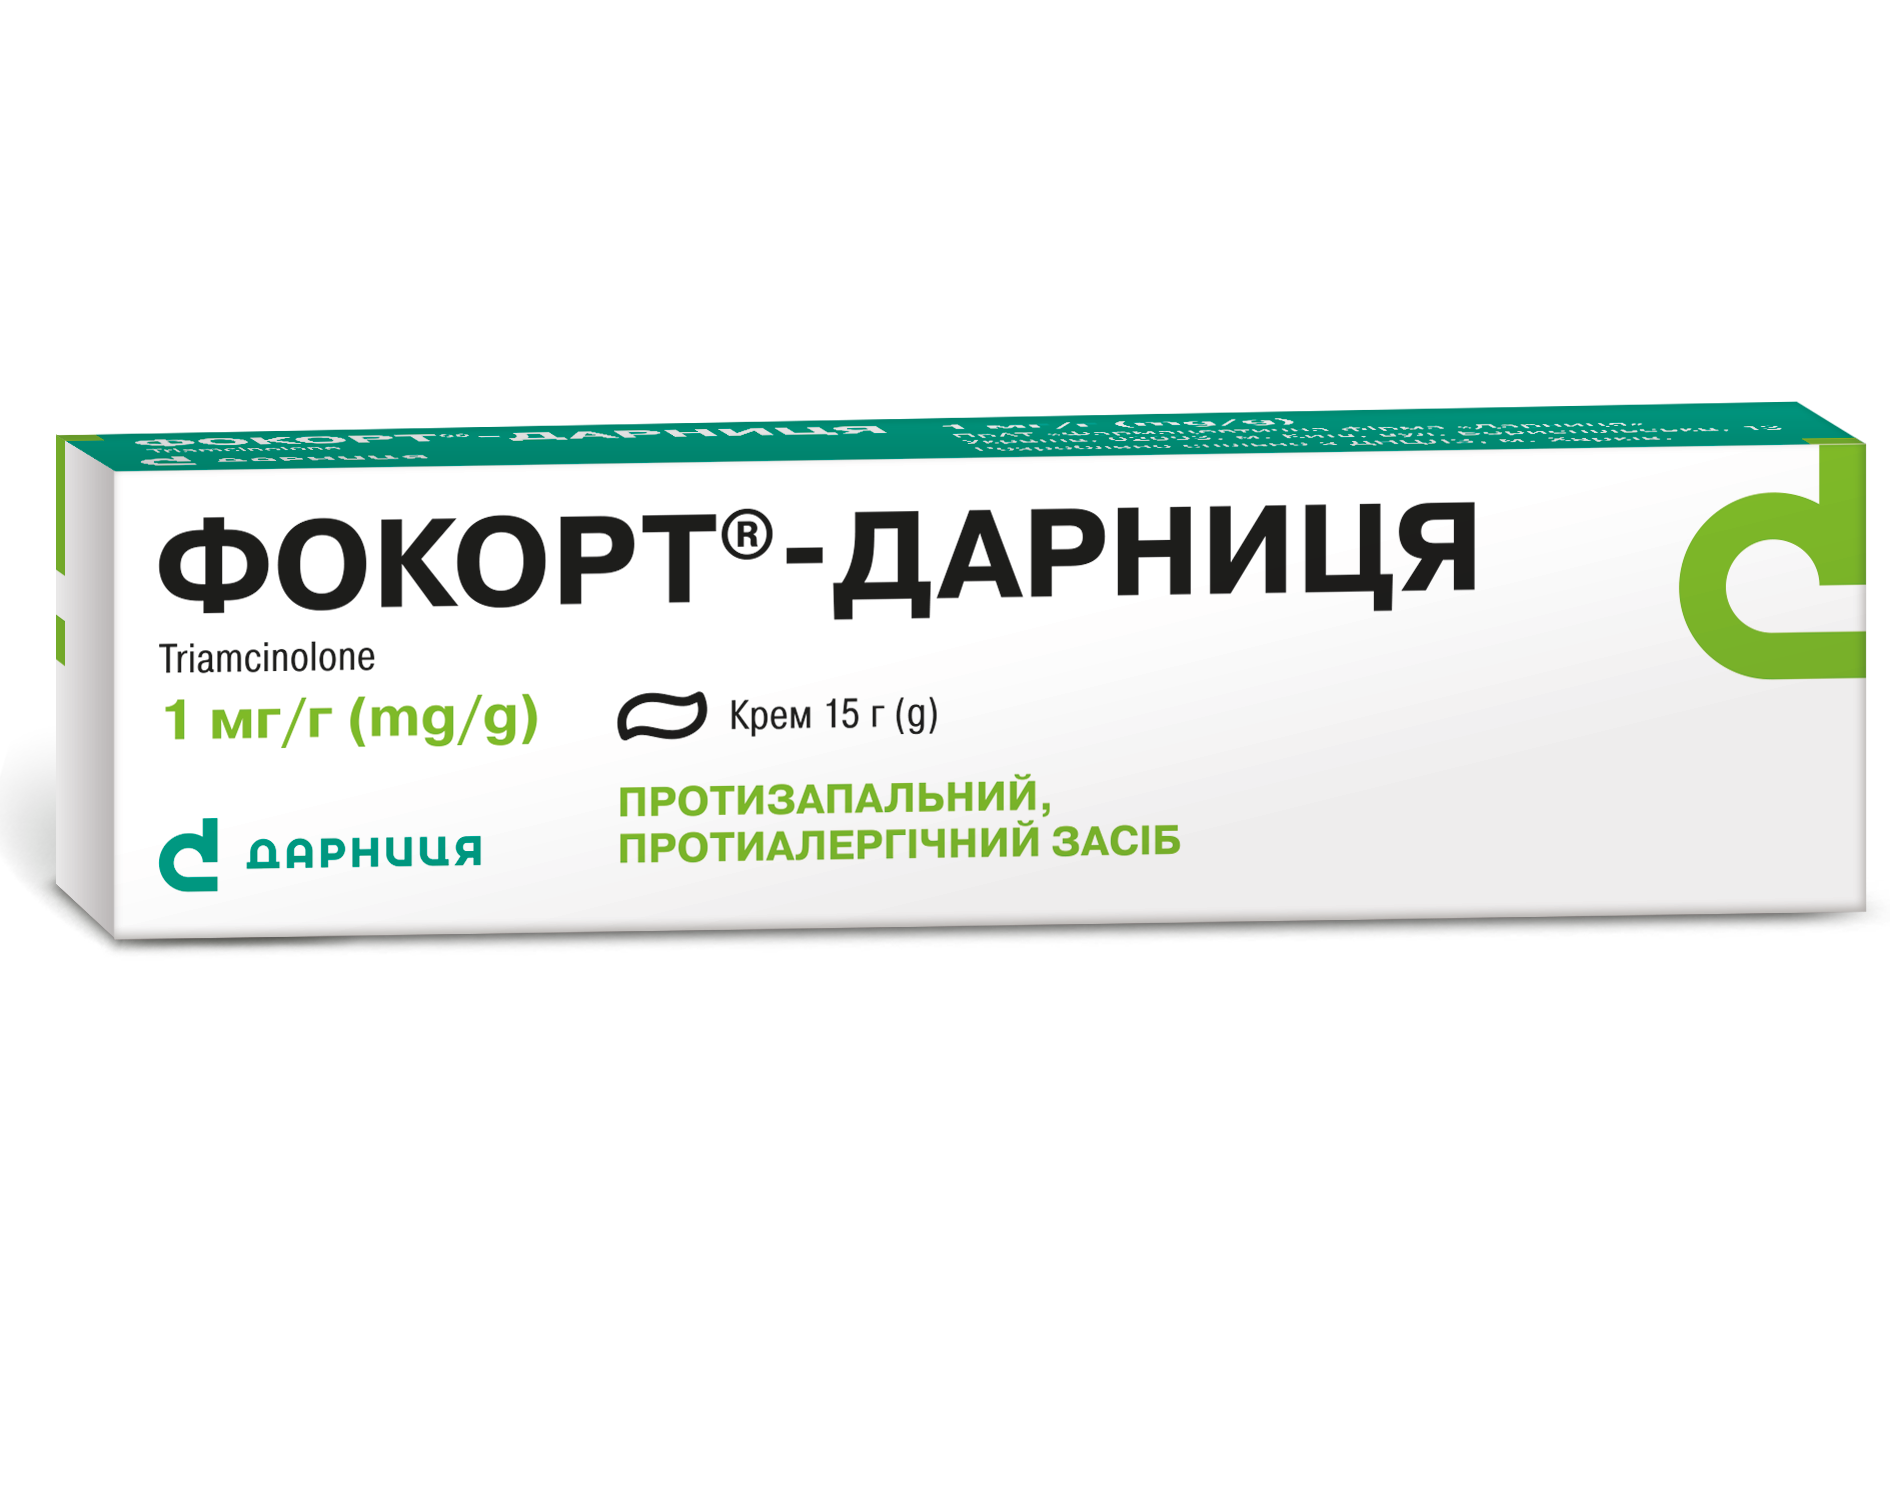 Фокорт®- Дарниця